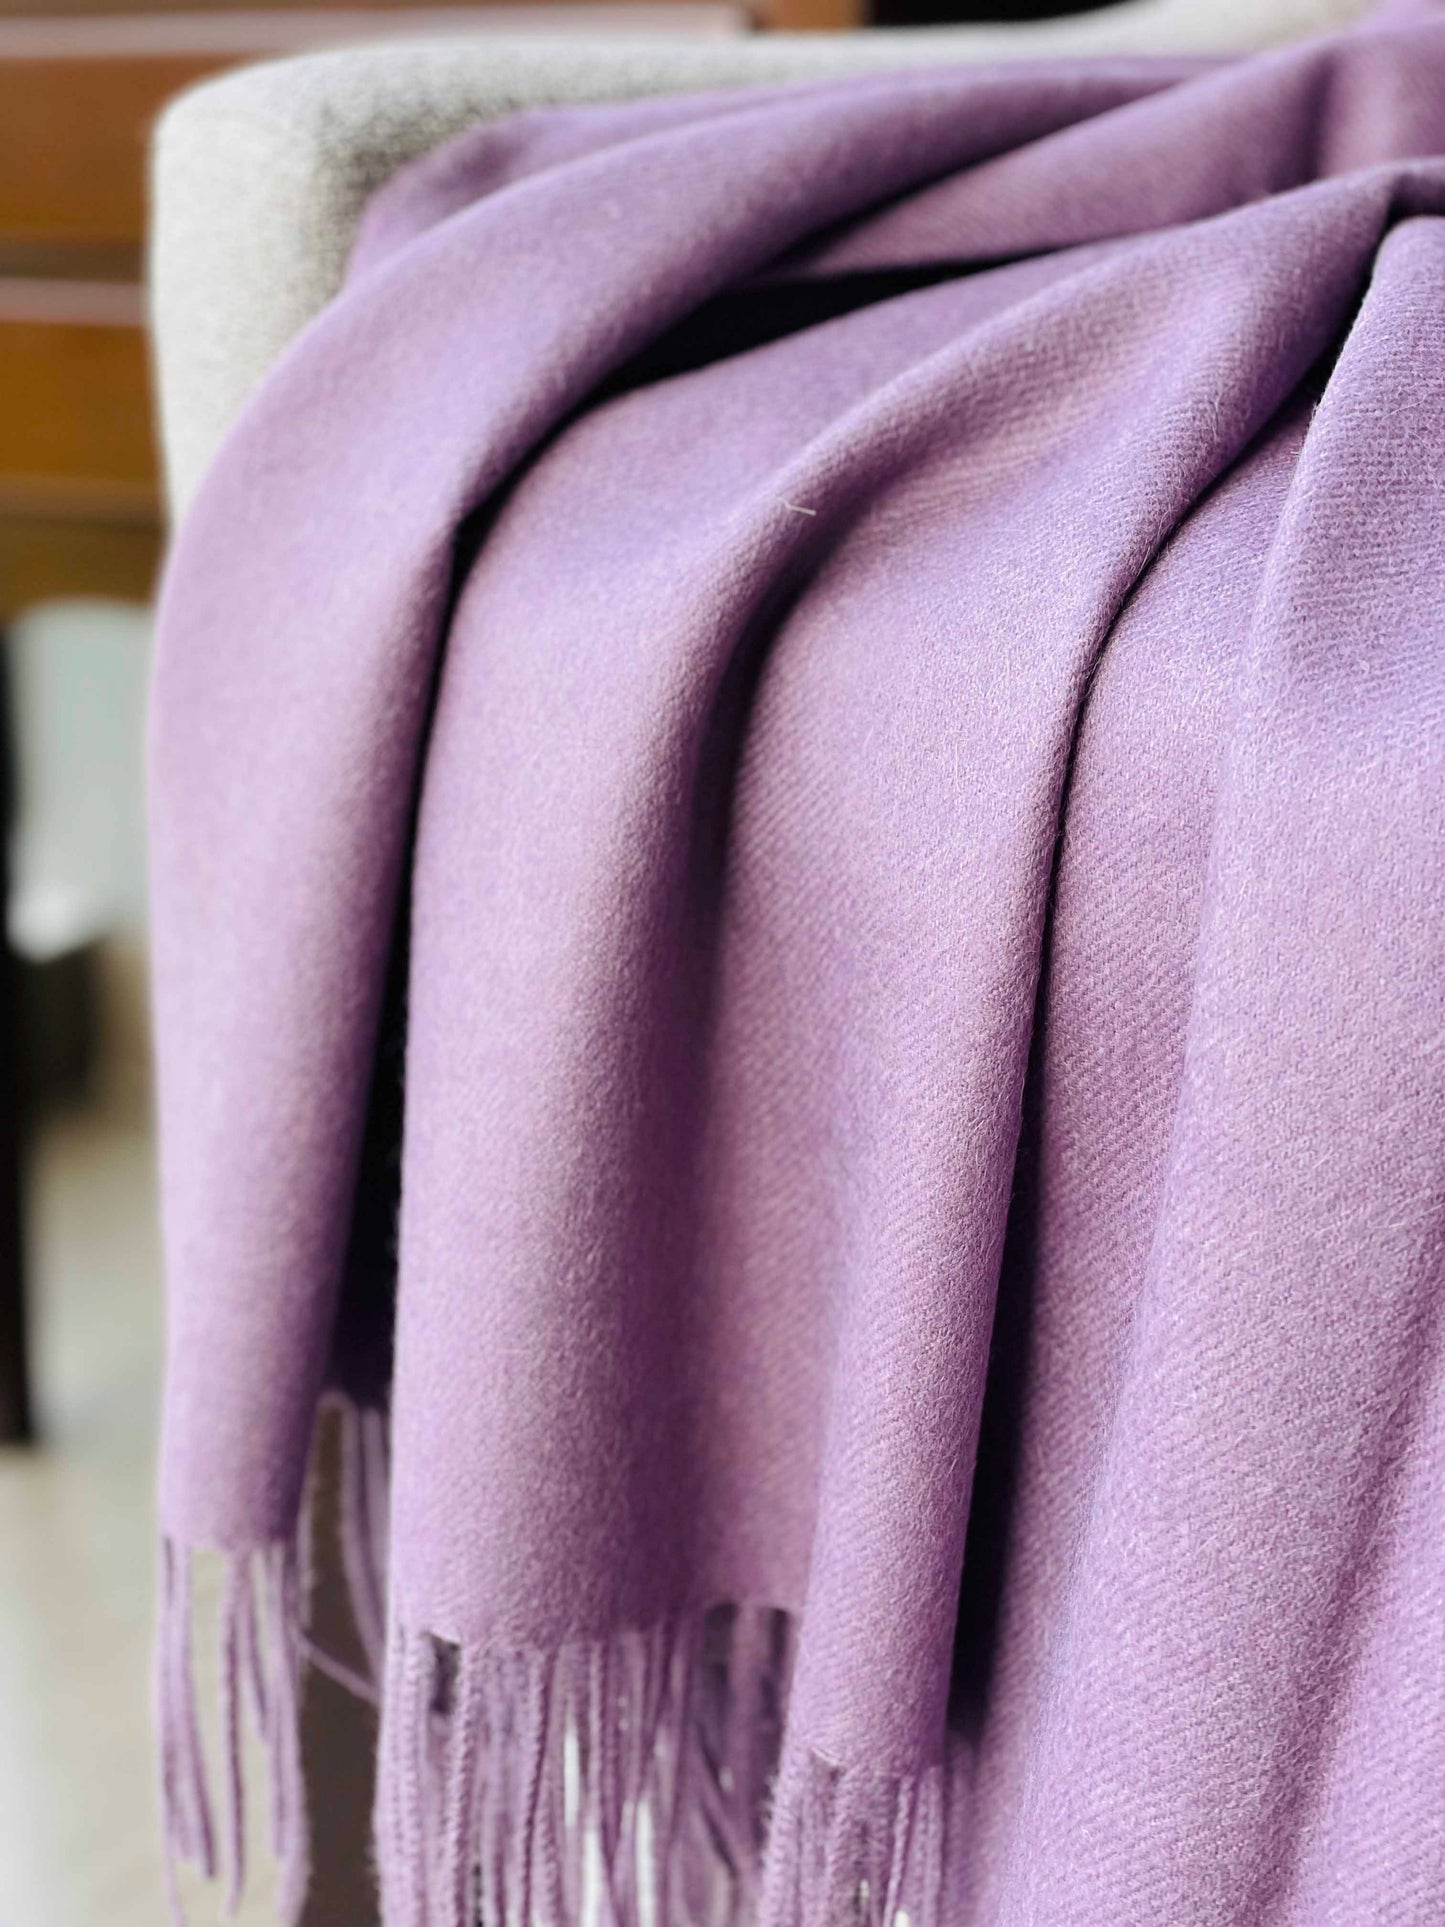 Blanket from alpaca wool in violet color